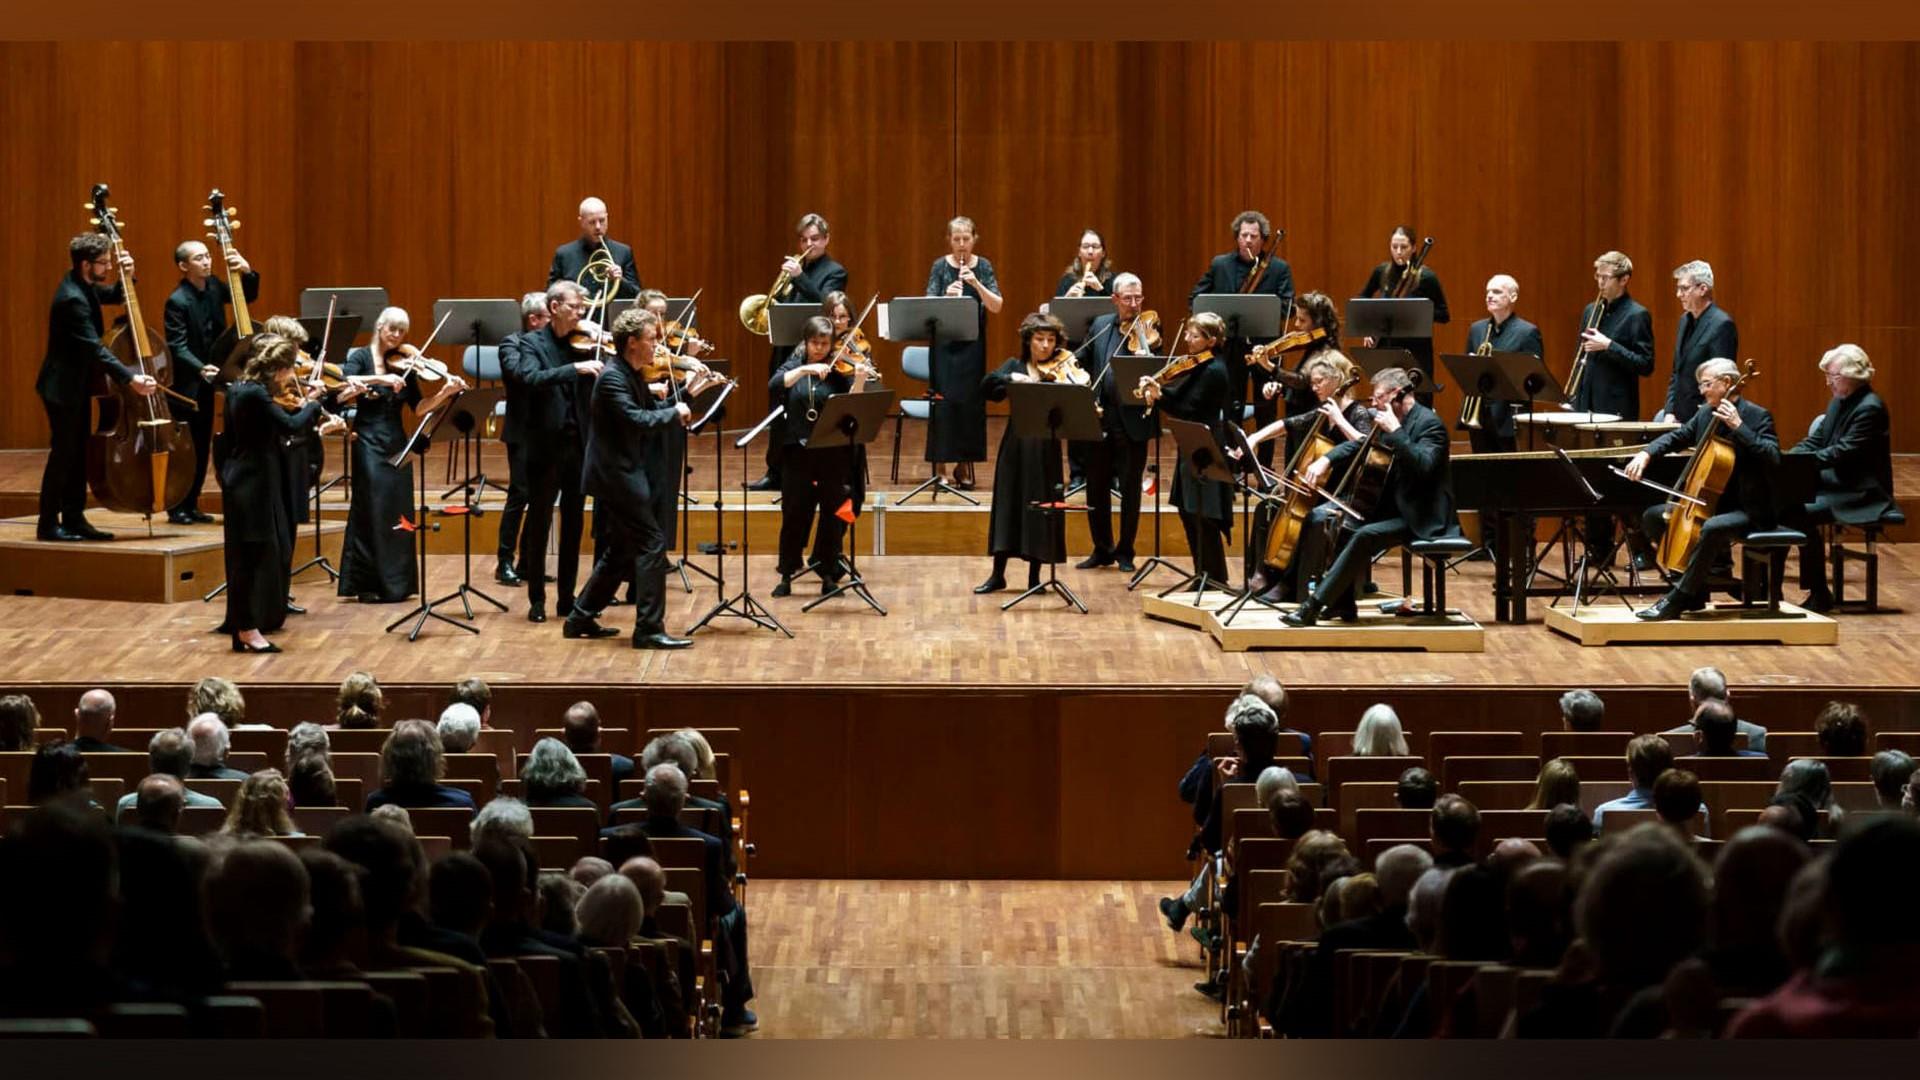 Freiburger Barockorchester har i över 30 år tillhört Europas främsta ensembler som är inriktade på tidig musik. Nu är de på turné i Sverige. Foto: Freiburger Barockorchester